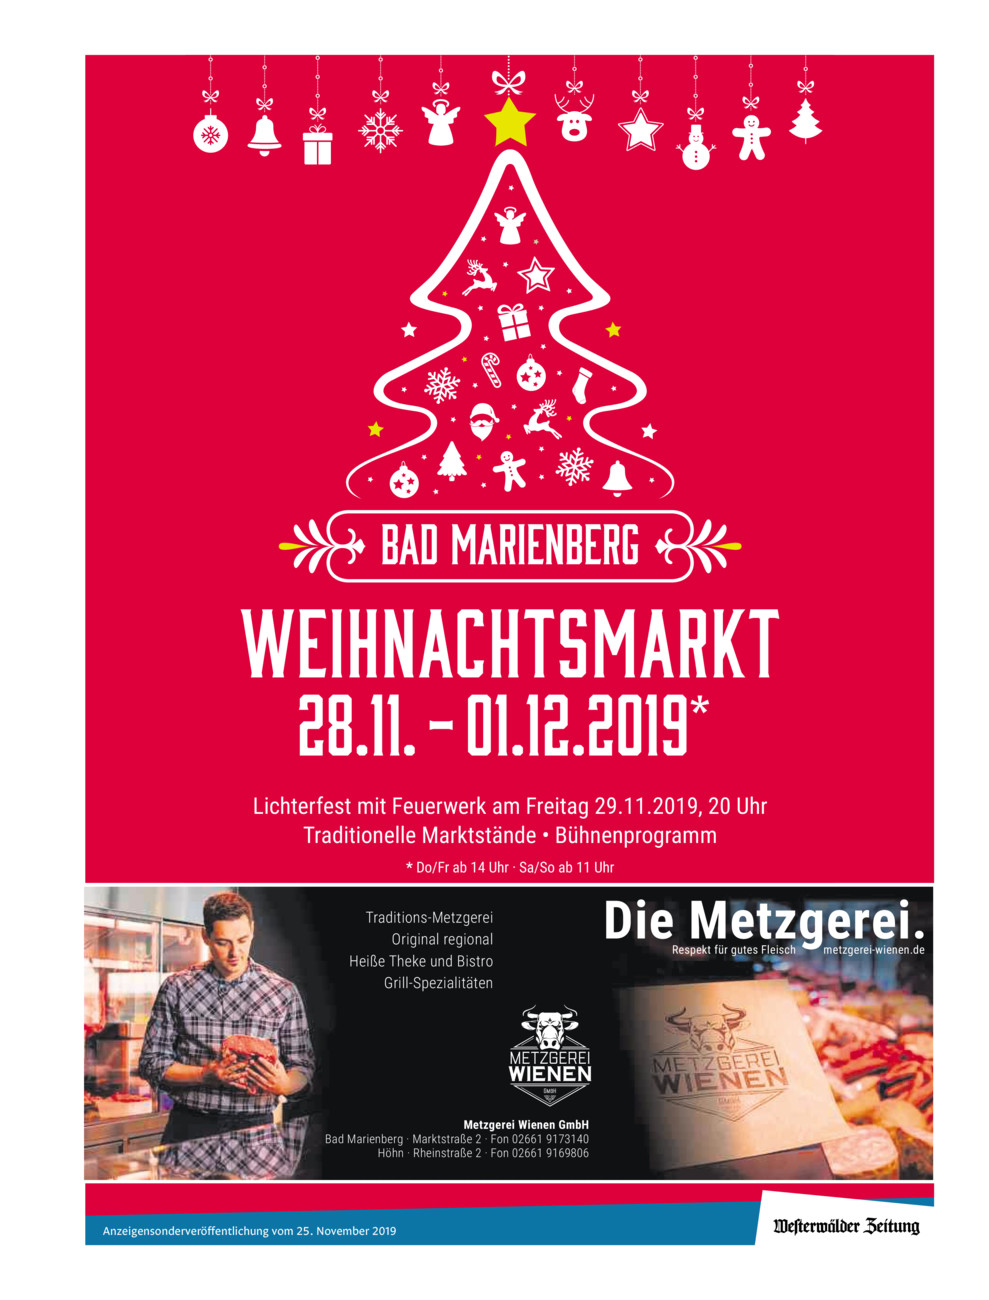 Weihnachtsmarkt Bad Marienberg 2019